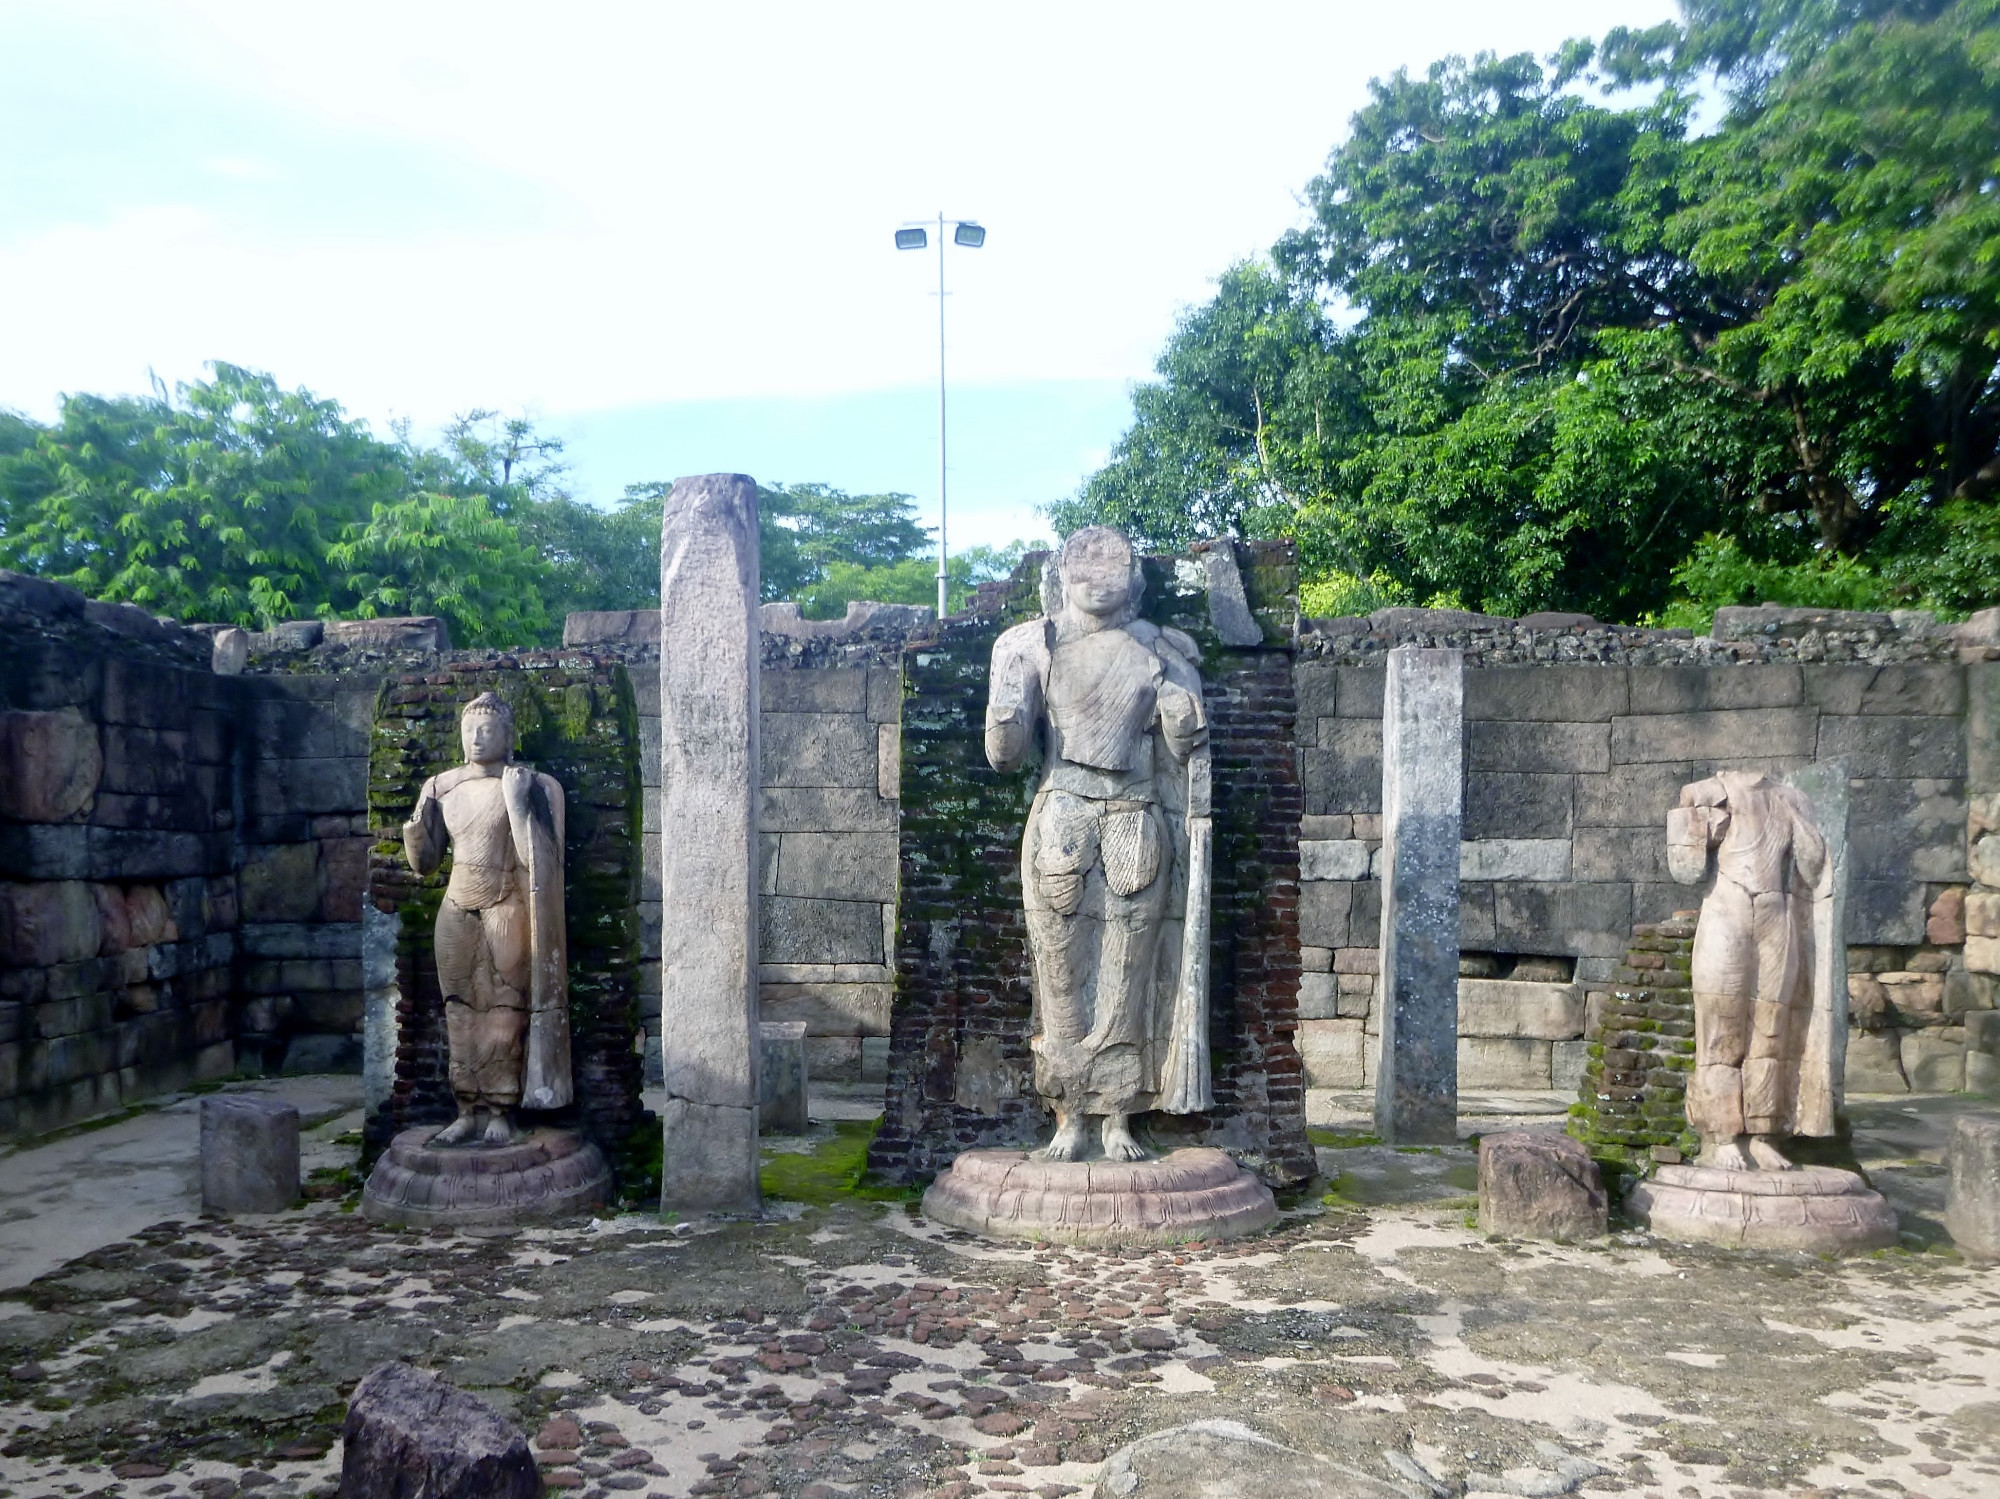 Hatadage Statues